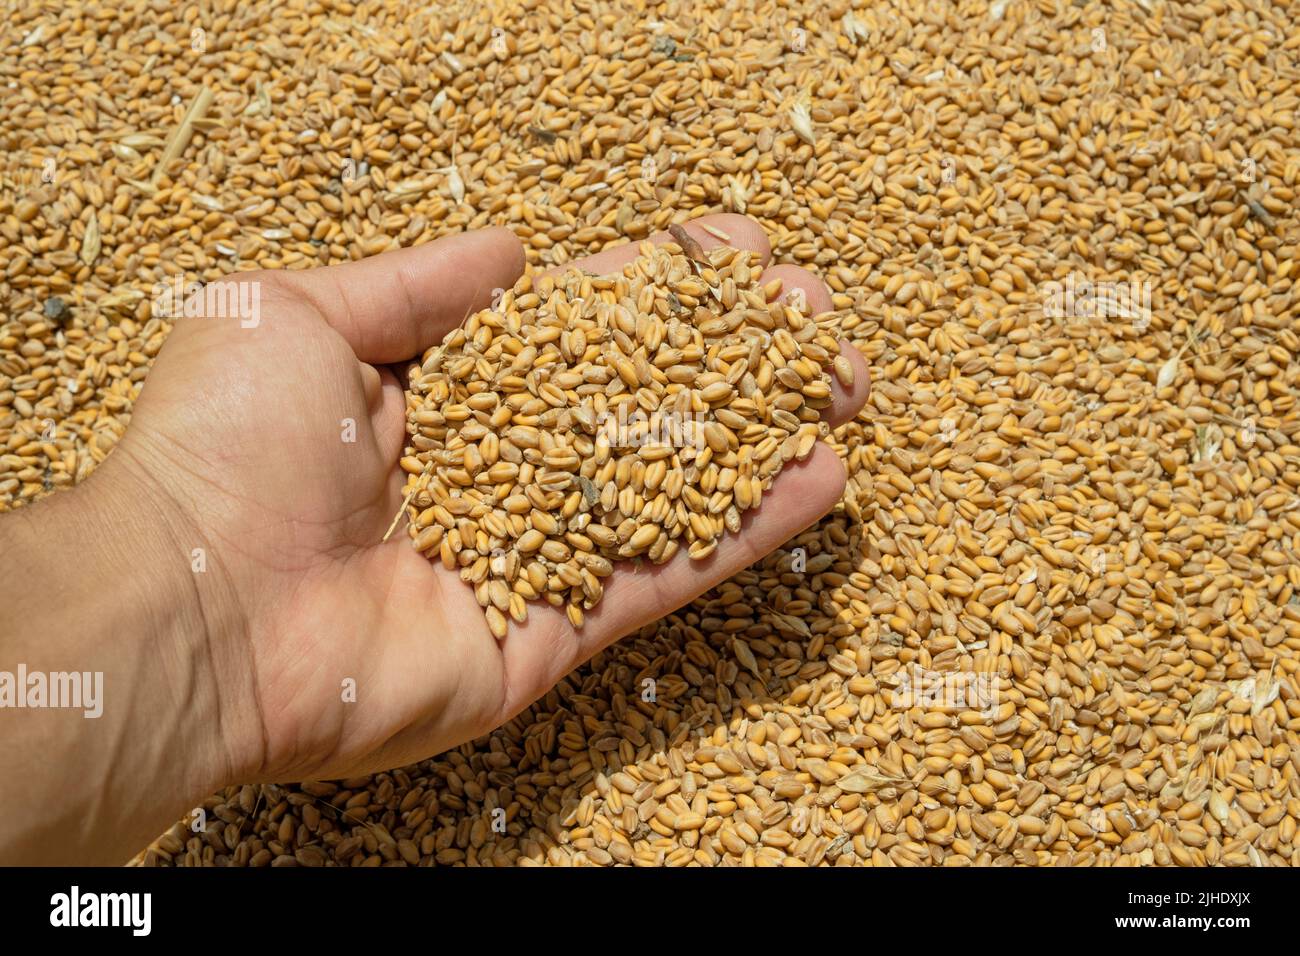 La mano del granjero mientras que toca granos cosechados de las semillas del trigo, alimentos crudos, crisis del precio del producto agrícola Foto de stock